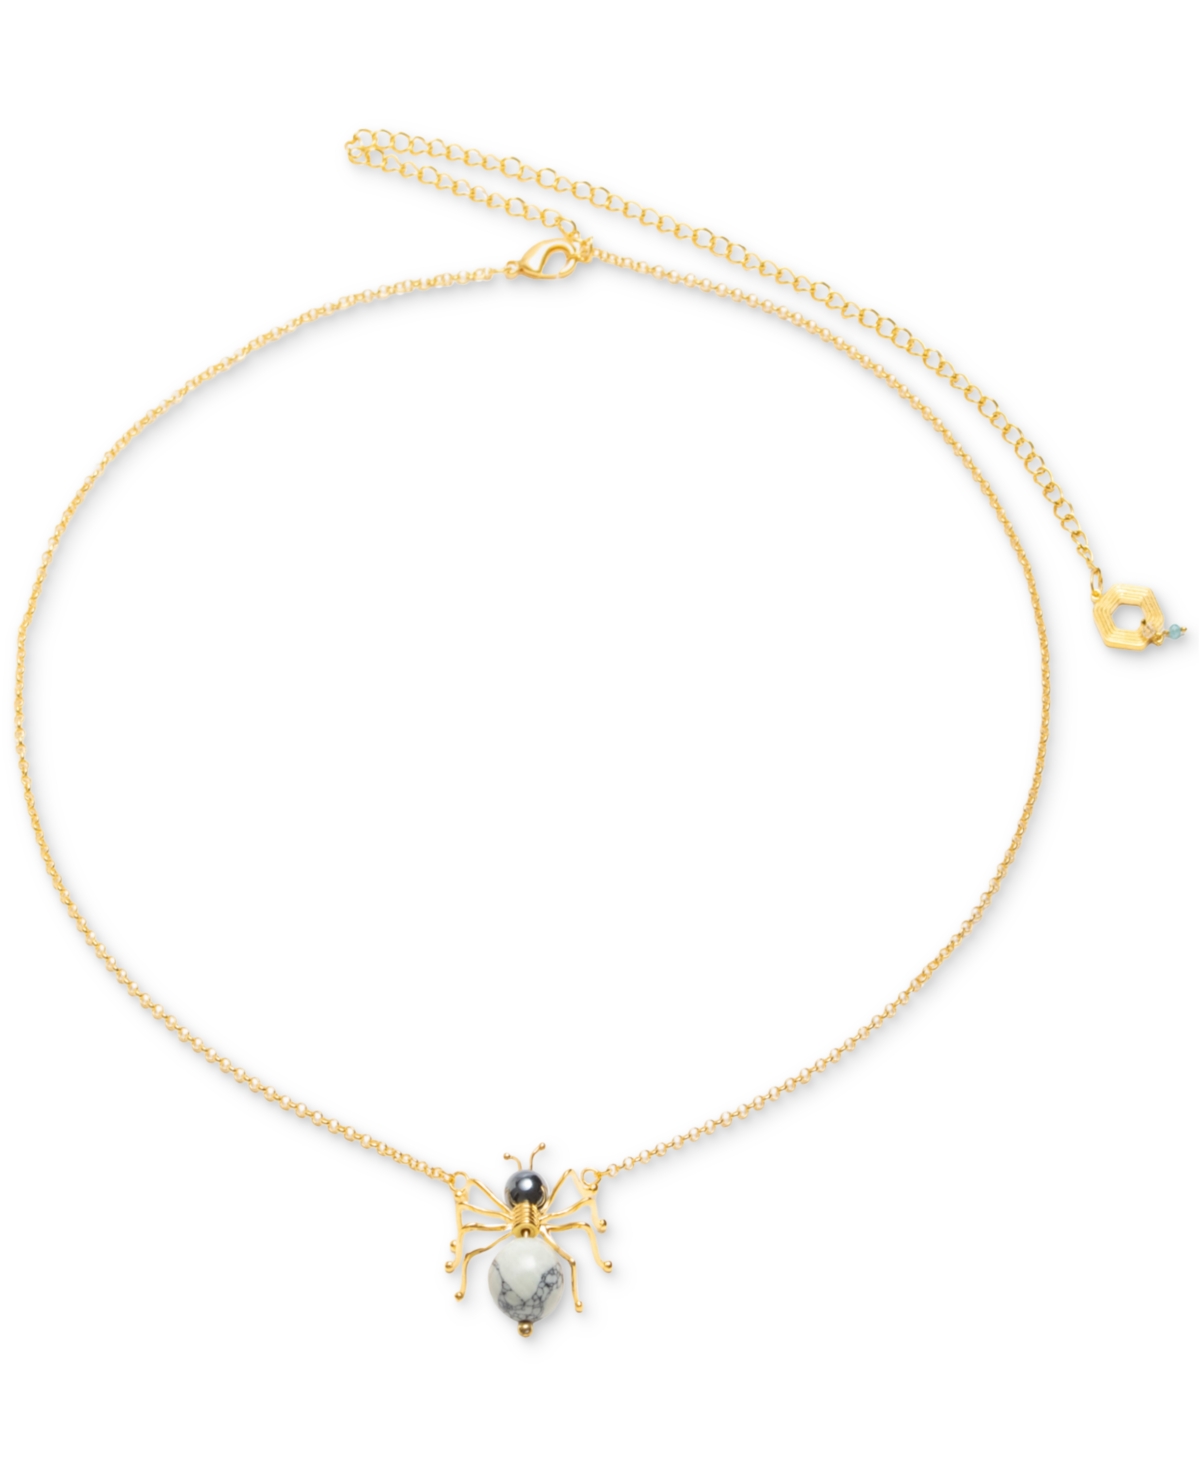 18k Gold-Plated Nurubi Pendant Necklace, 24" + 7" extender - Gld